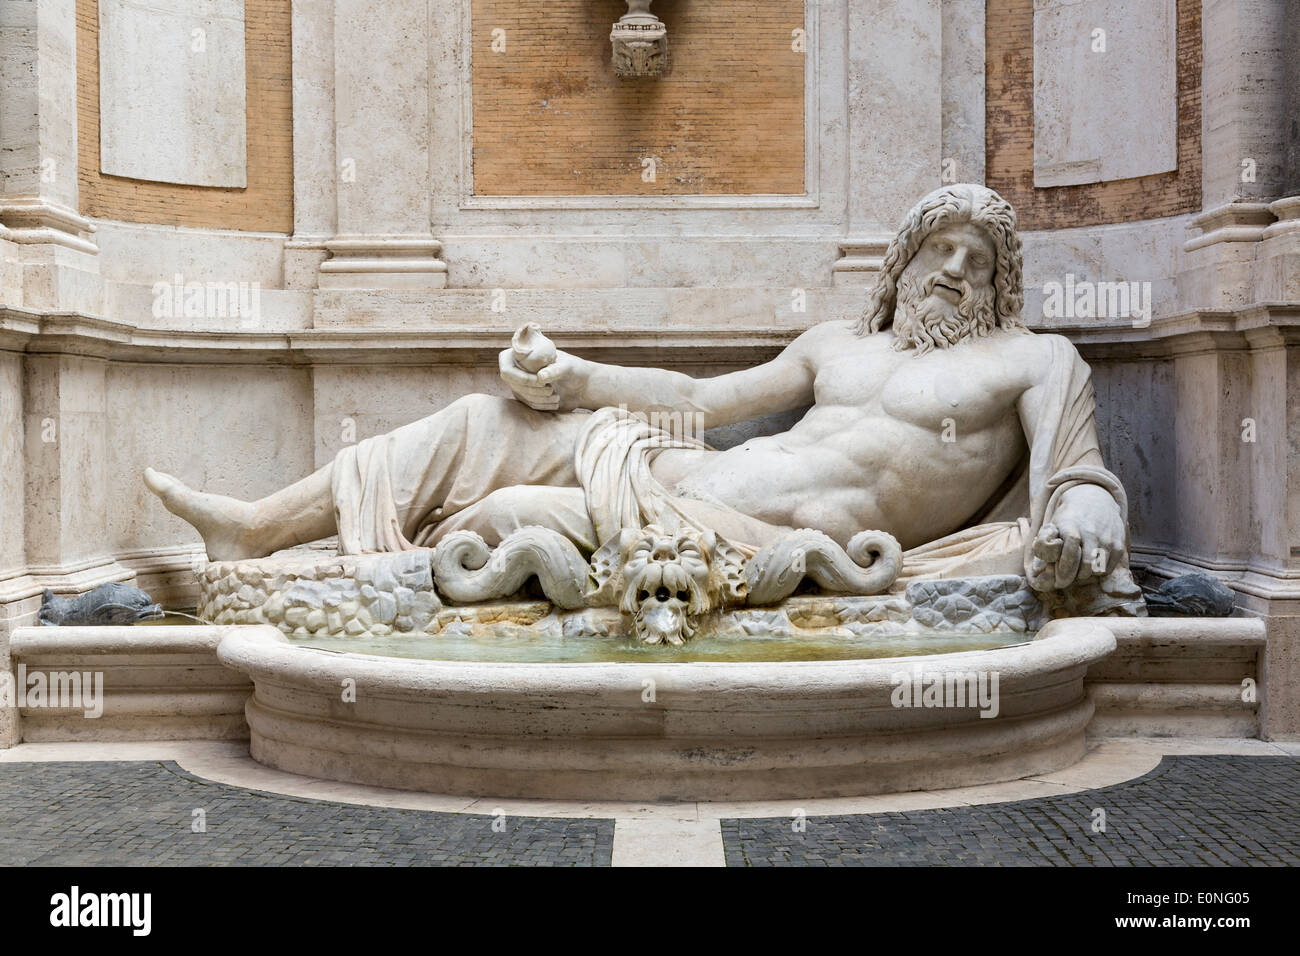 Statua colossale restaurata come Oceanus, Marforio, Musei Capitolini di Roma, Italia Foto Stock